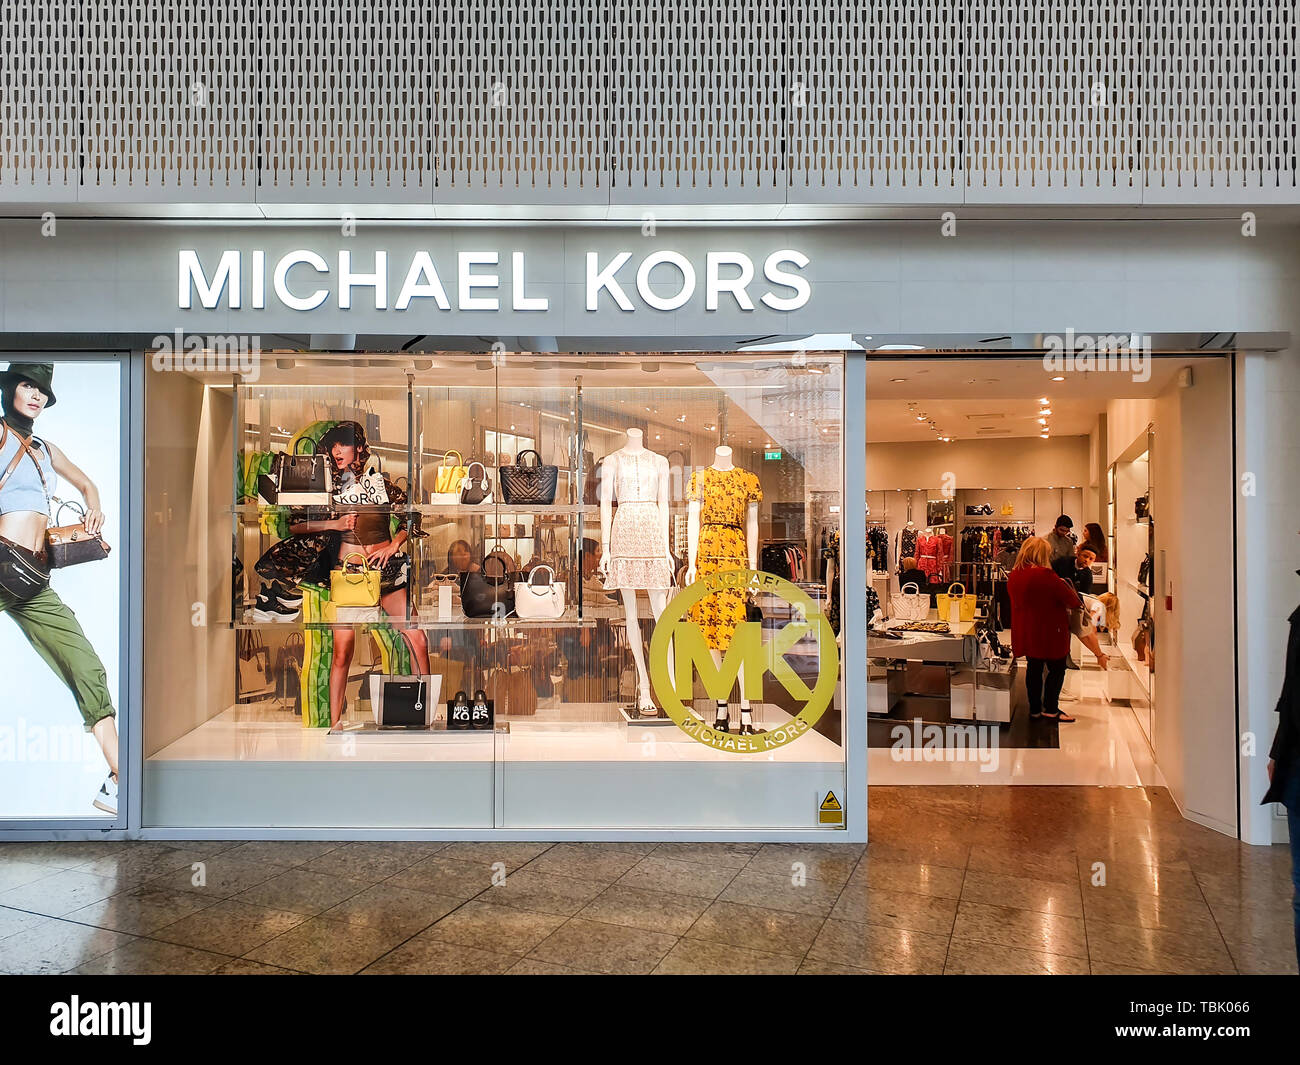 Michael Kors Handbag High Resolution Stock Photography and Images - Alamy